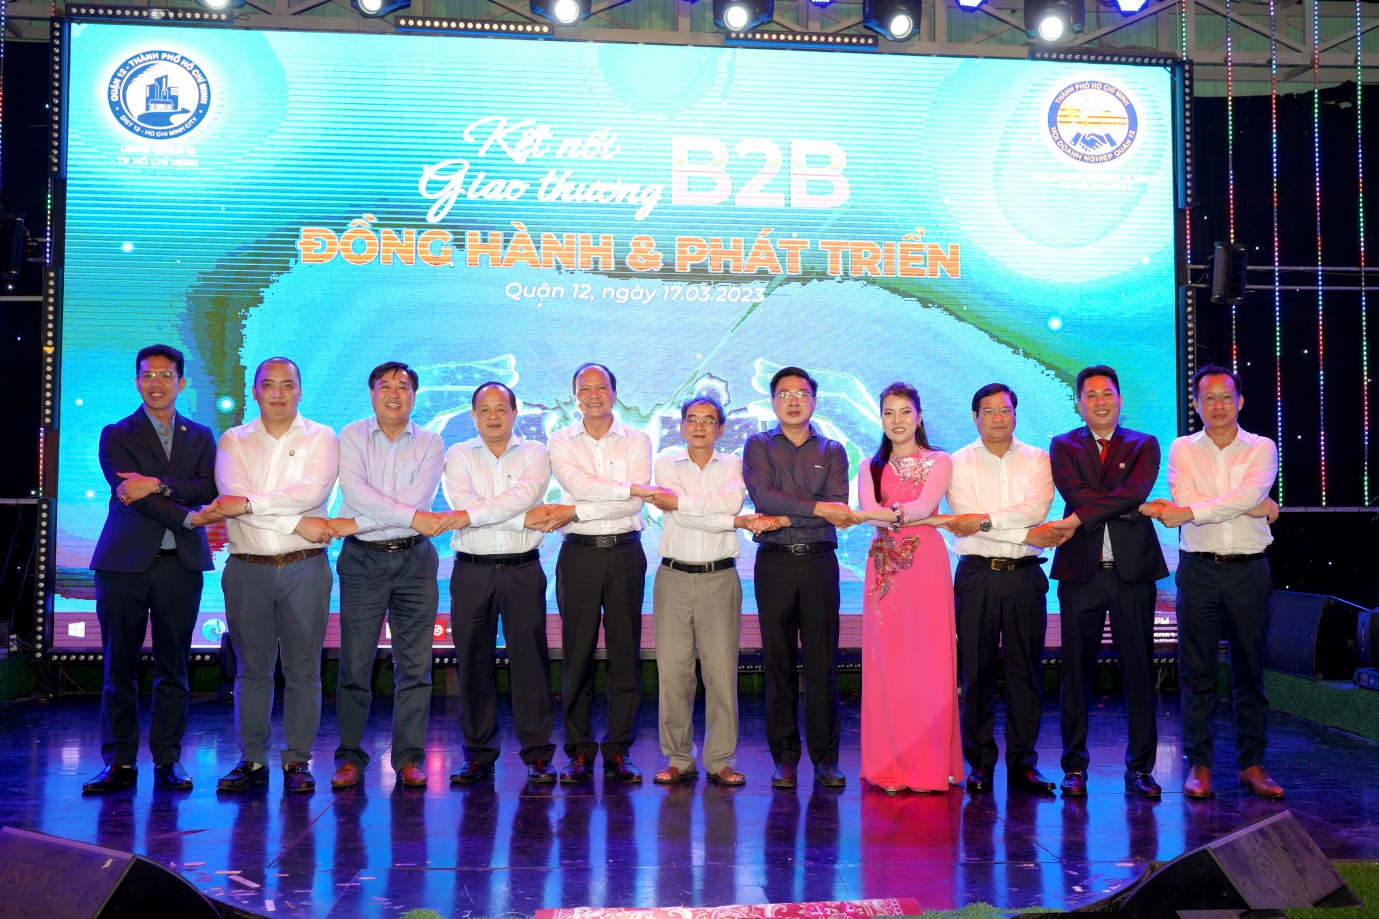 Hội viên phấn khởi khi tham gia chương trình B2B do hội doanh nghiệp quận 12 tổ chức - 5